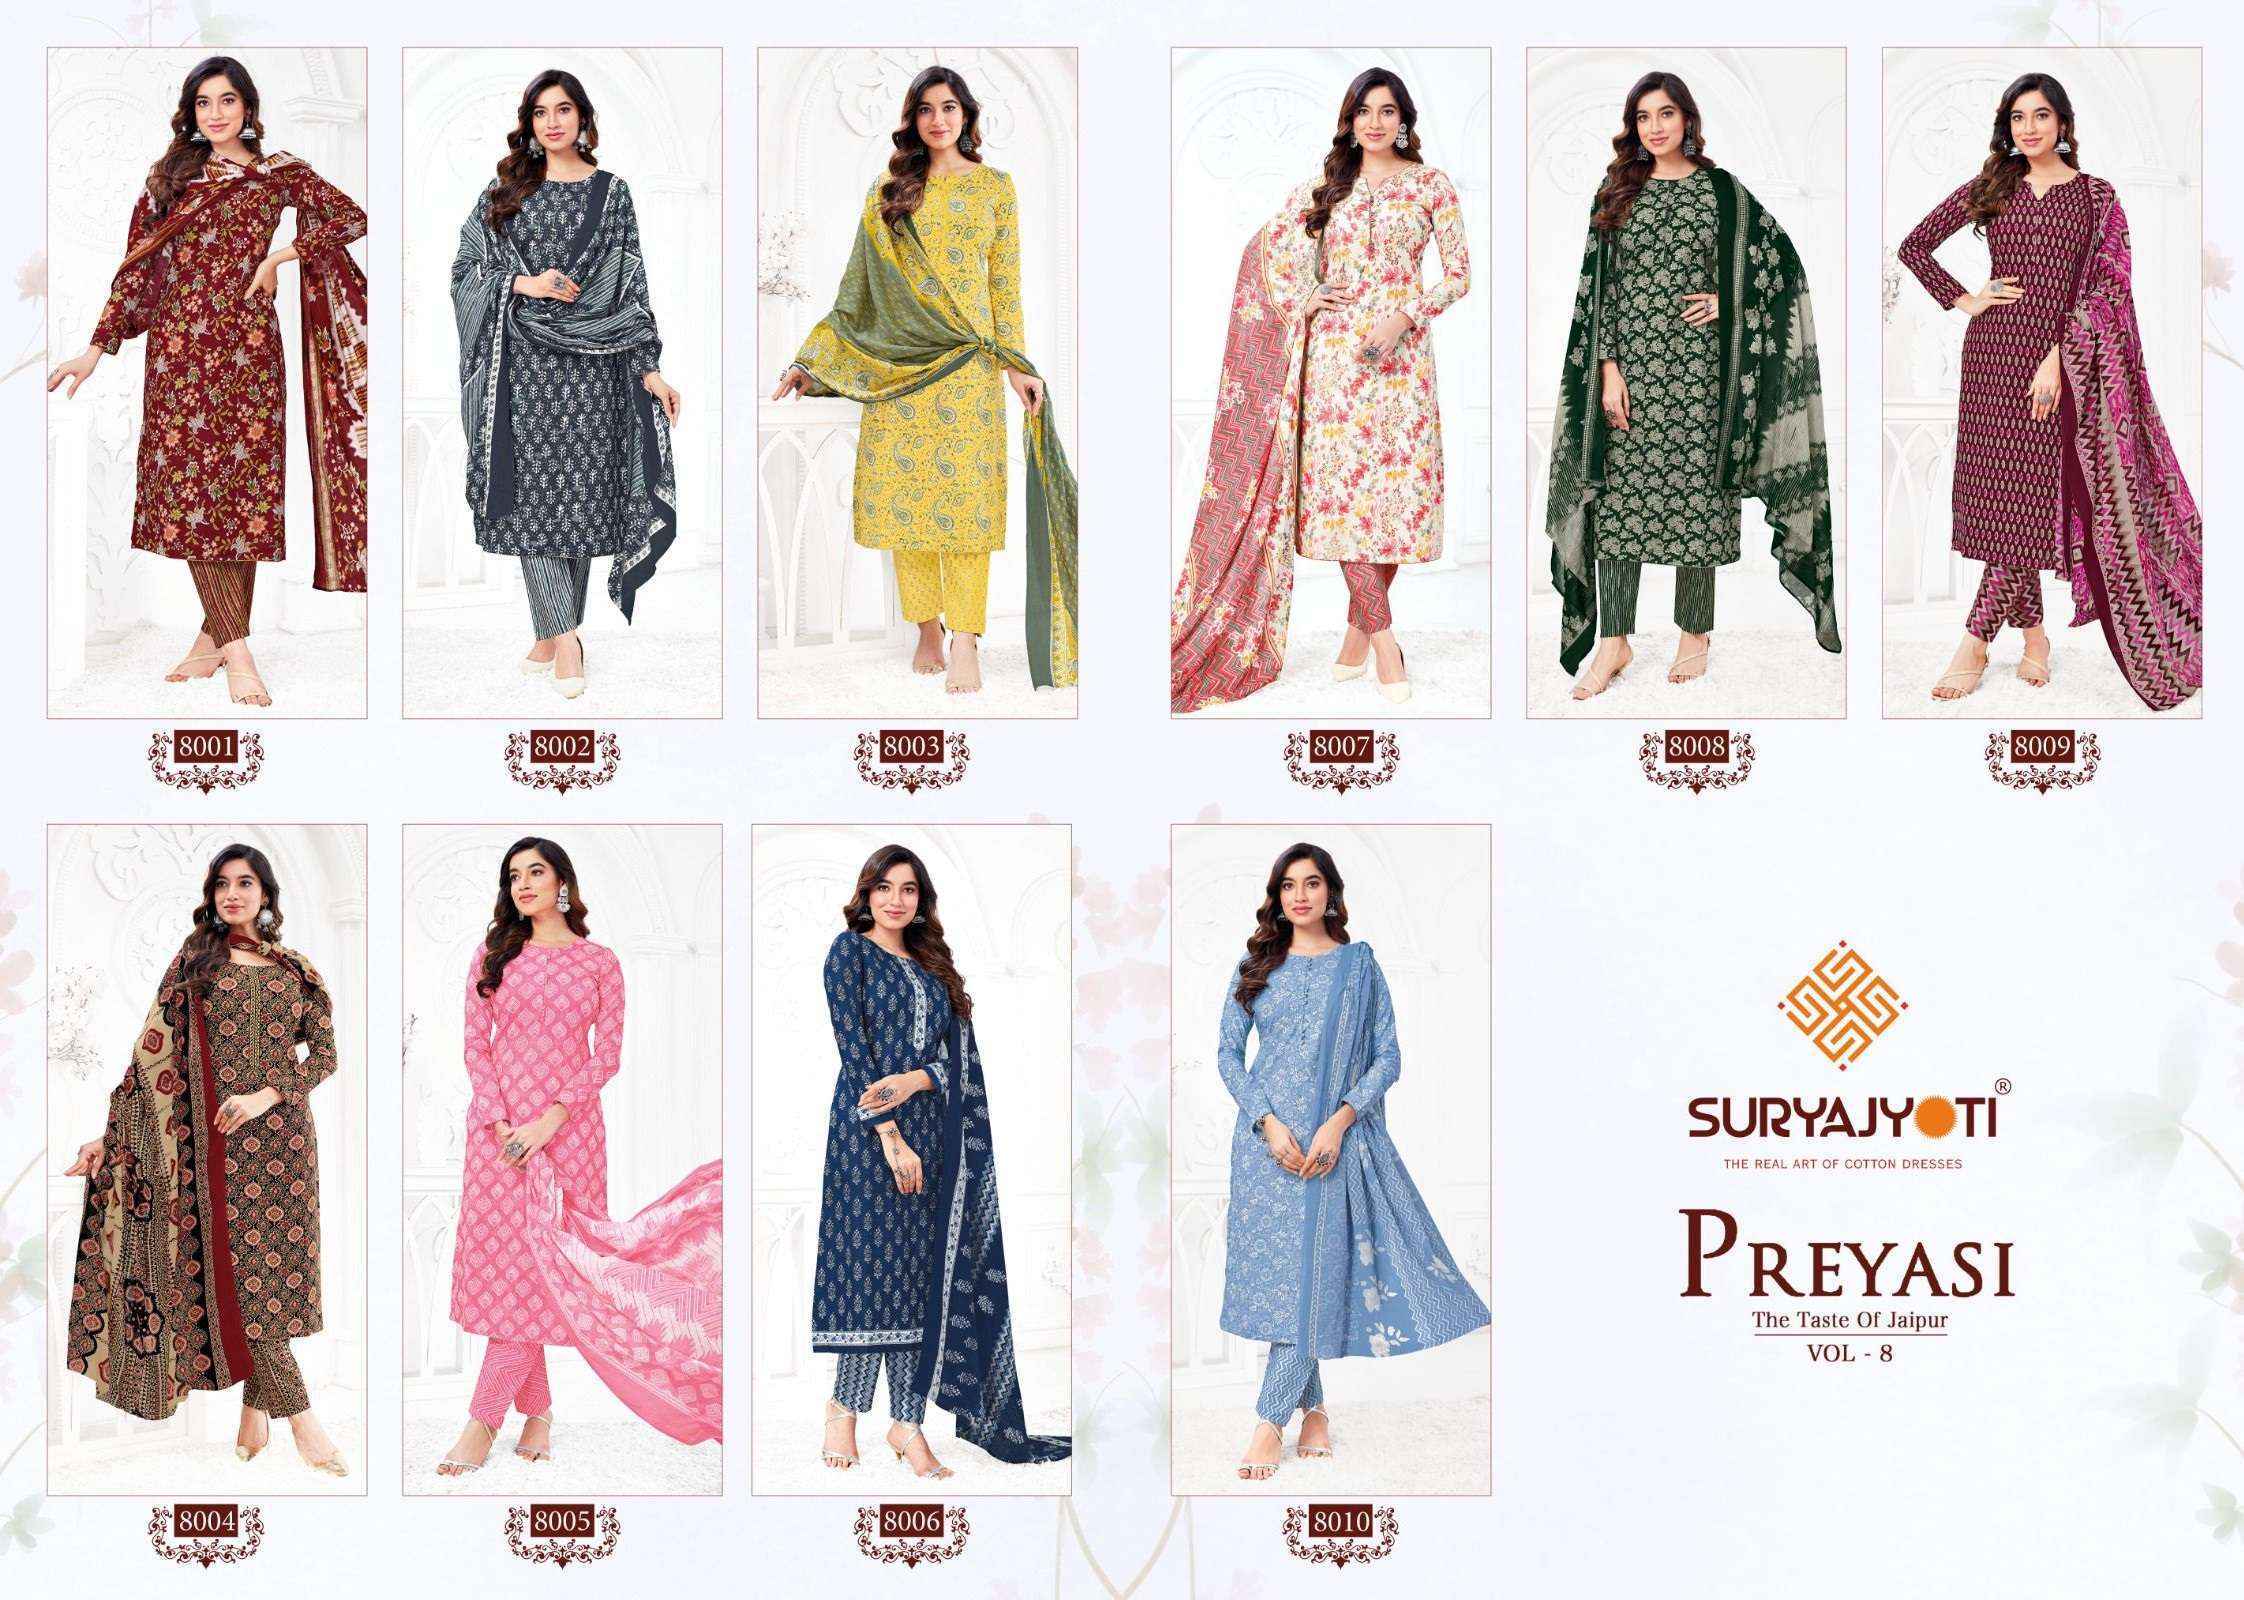 Suryajyoti Preyasi Vol 8 Readymade Cotton Dress 10 pcs Catalogue